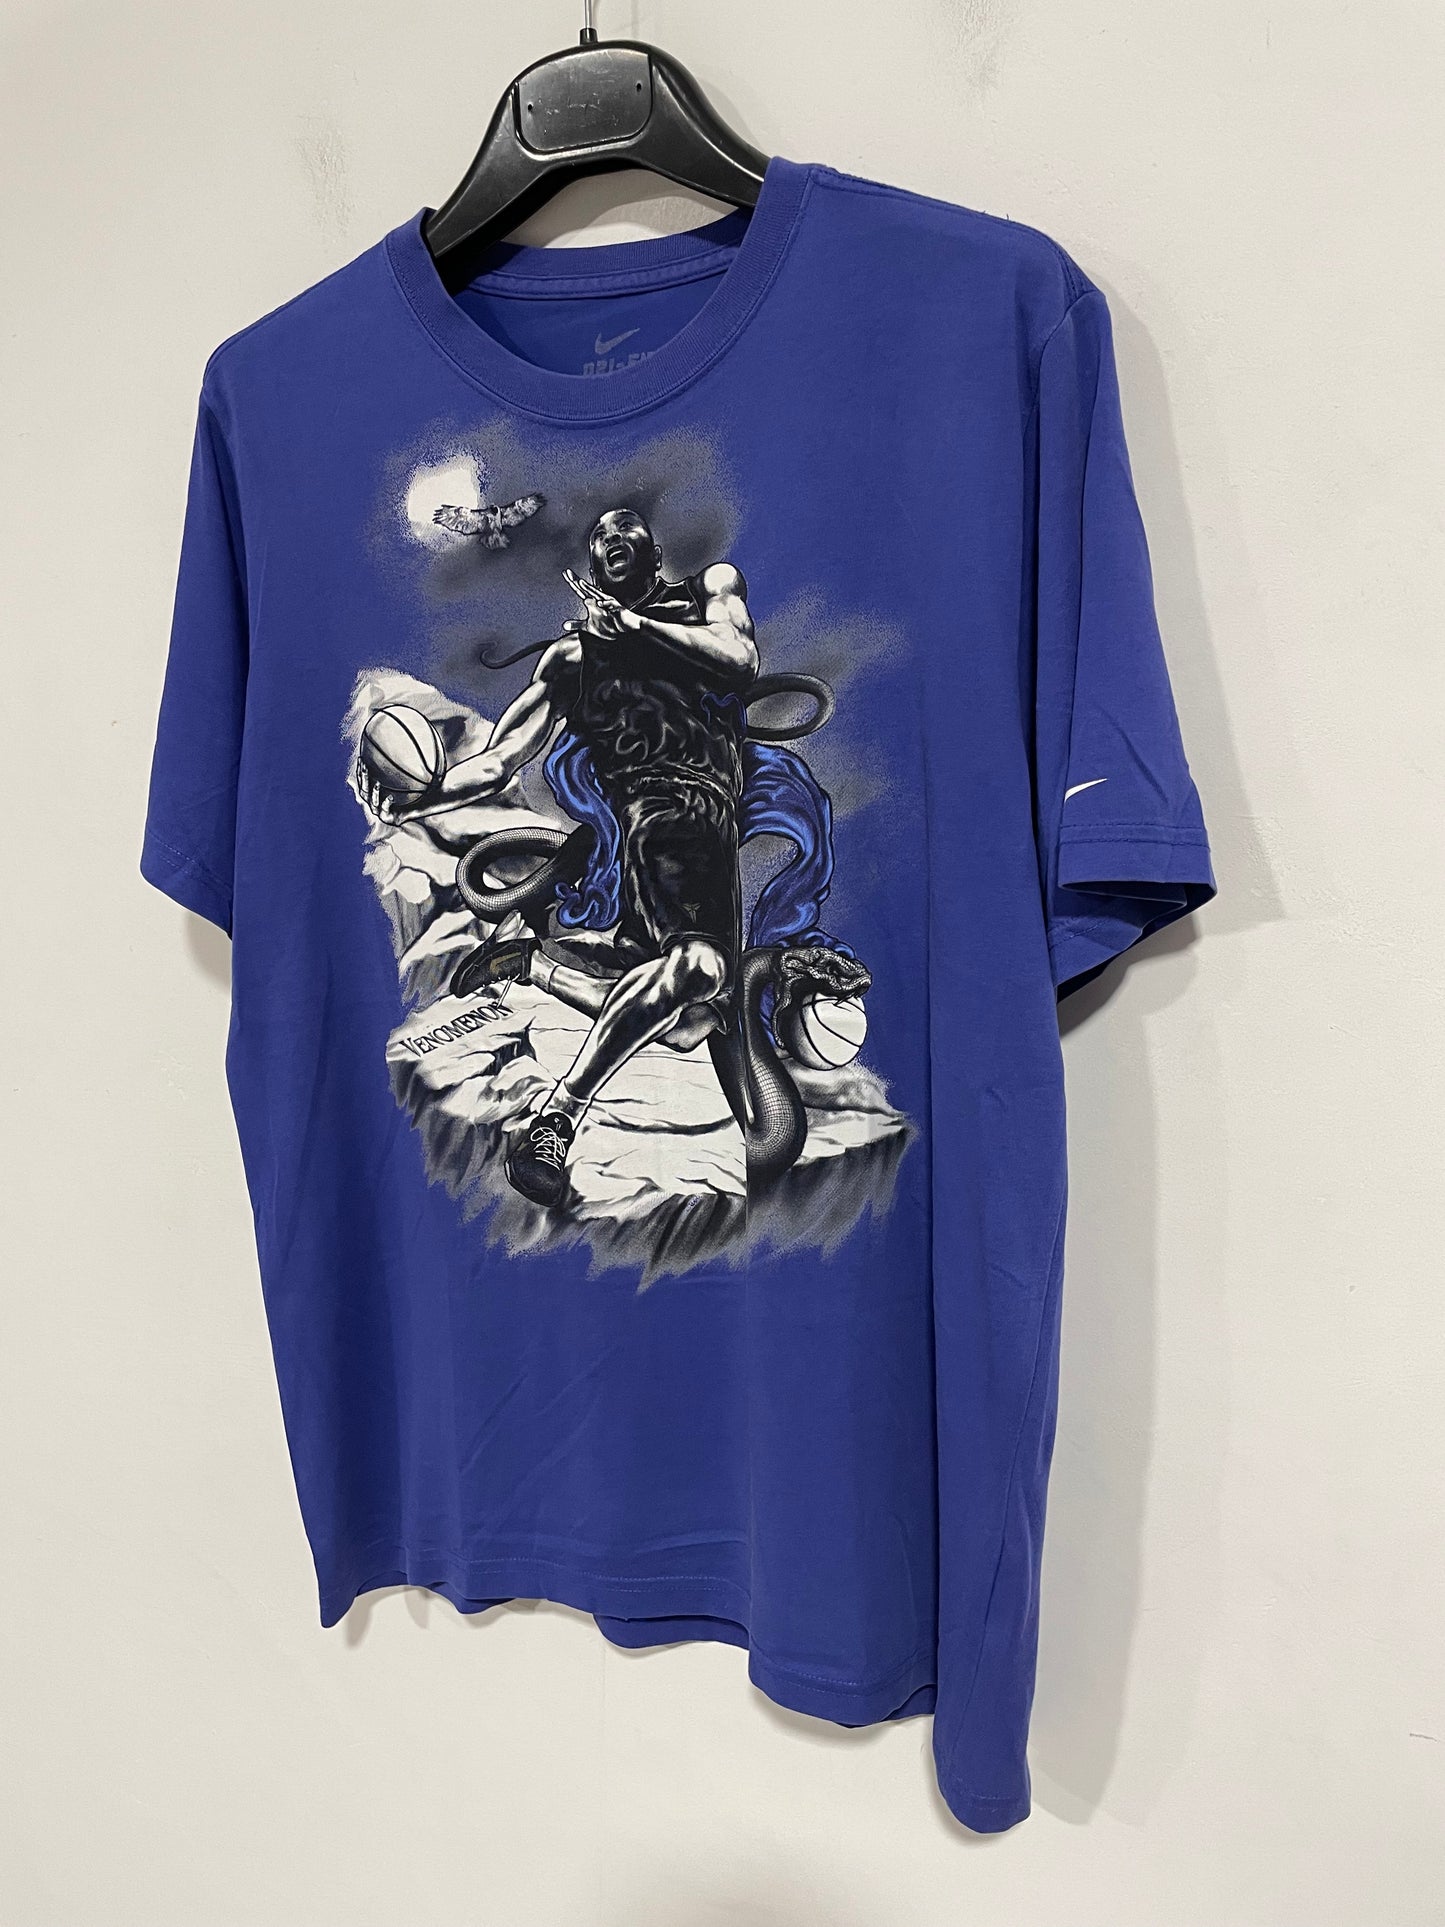 T shirt Nike Kobe black mamba (D374)